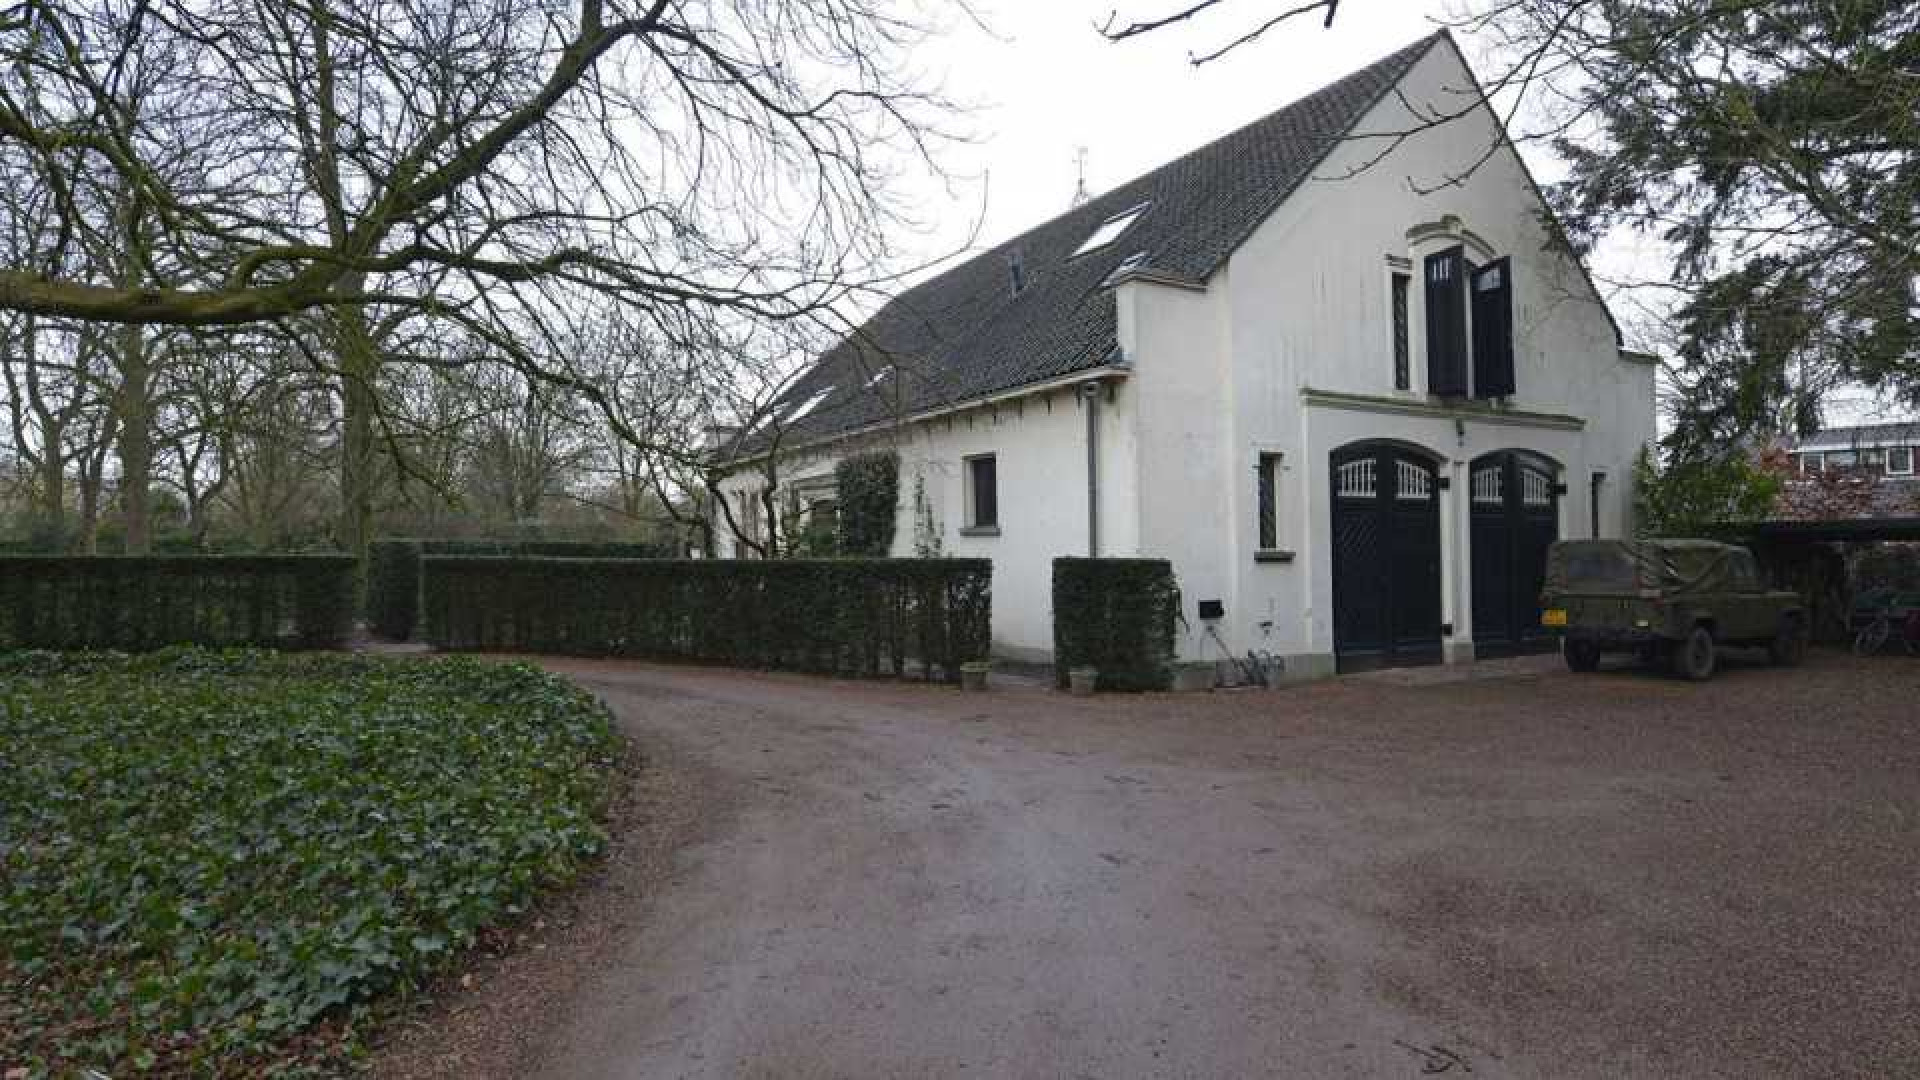 Prinses Irene zet haar prachtige landhuis in Wijk bij Duurstede te koop. Zie foto's